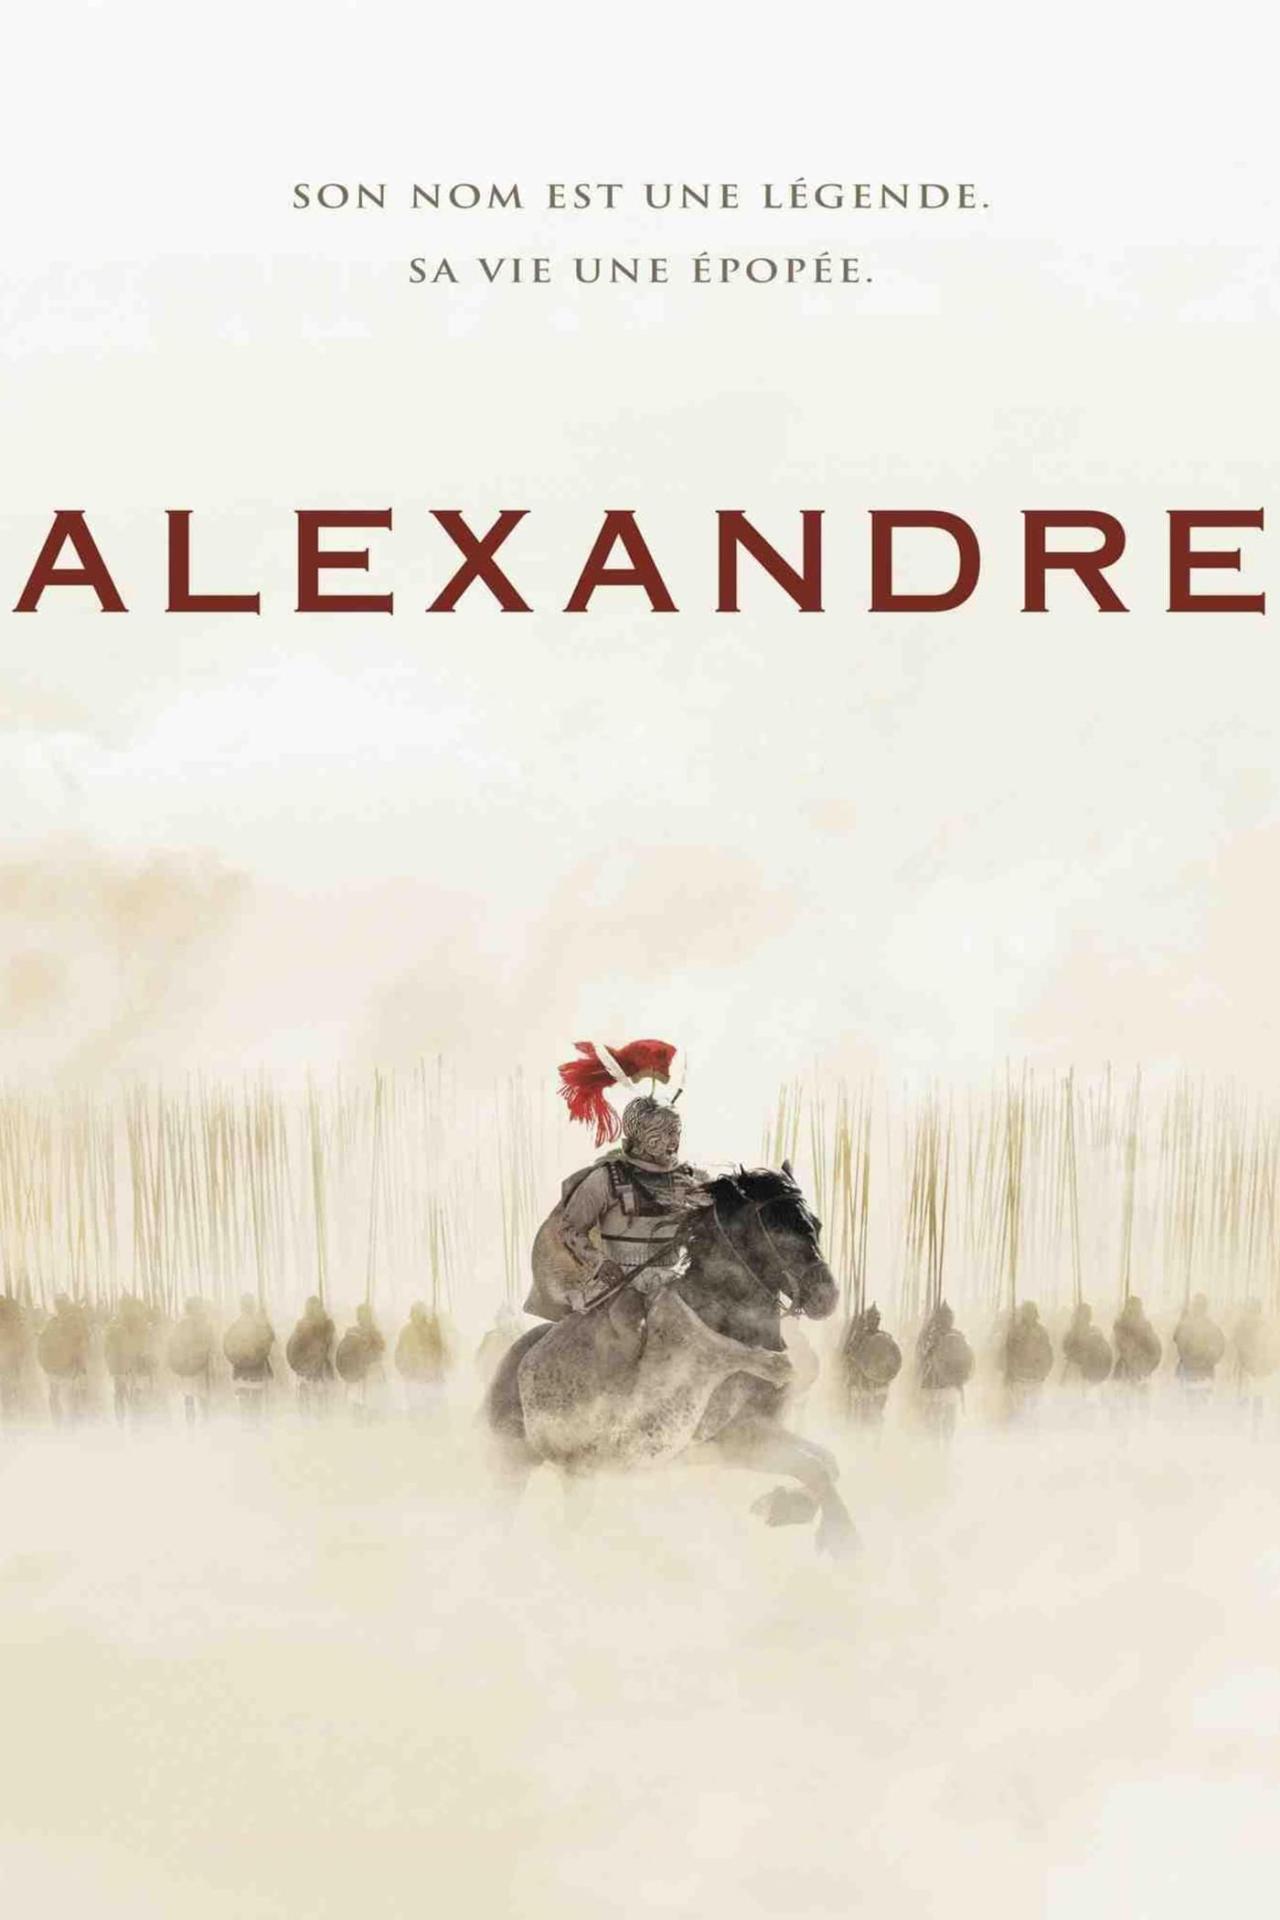 Alexandre est-il disponible sur Netflix ou autre ?